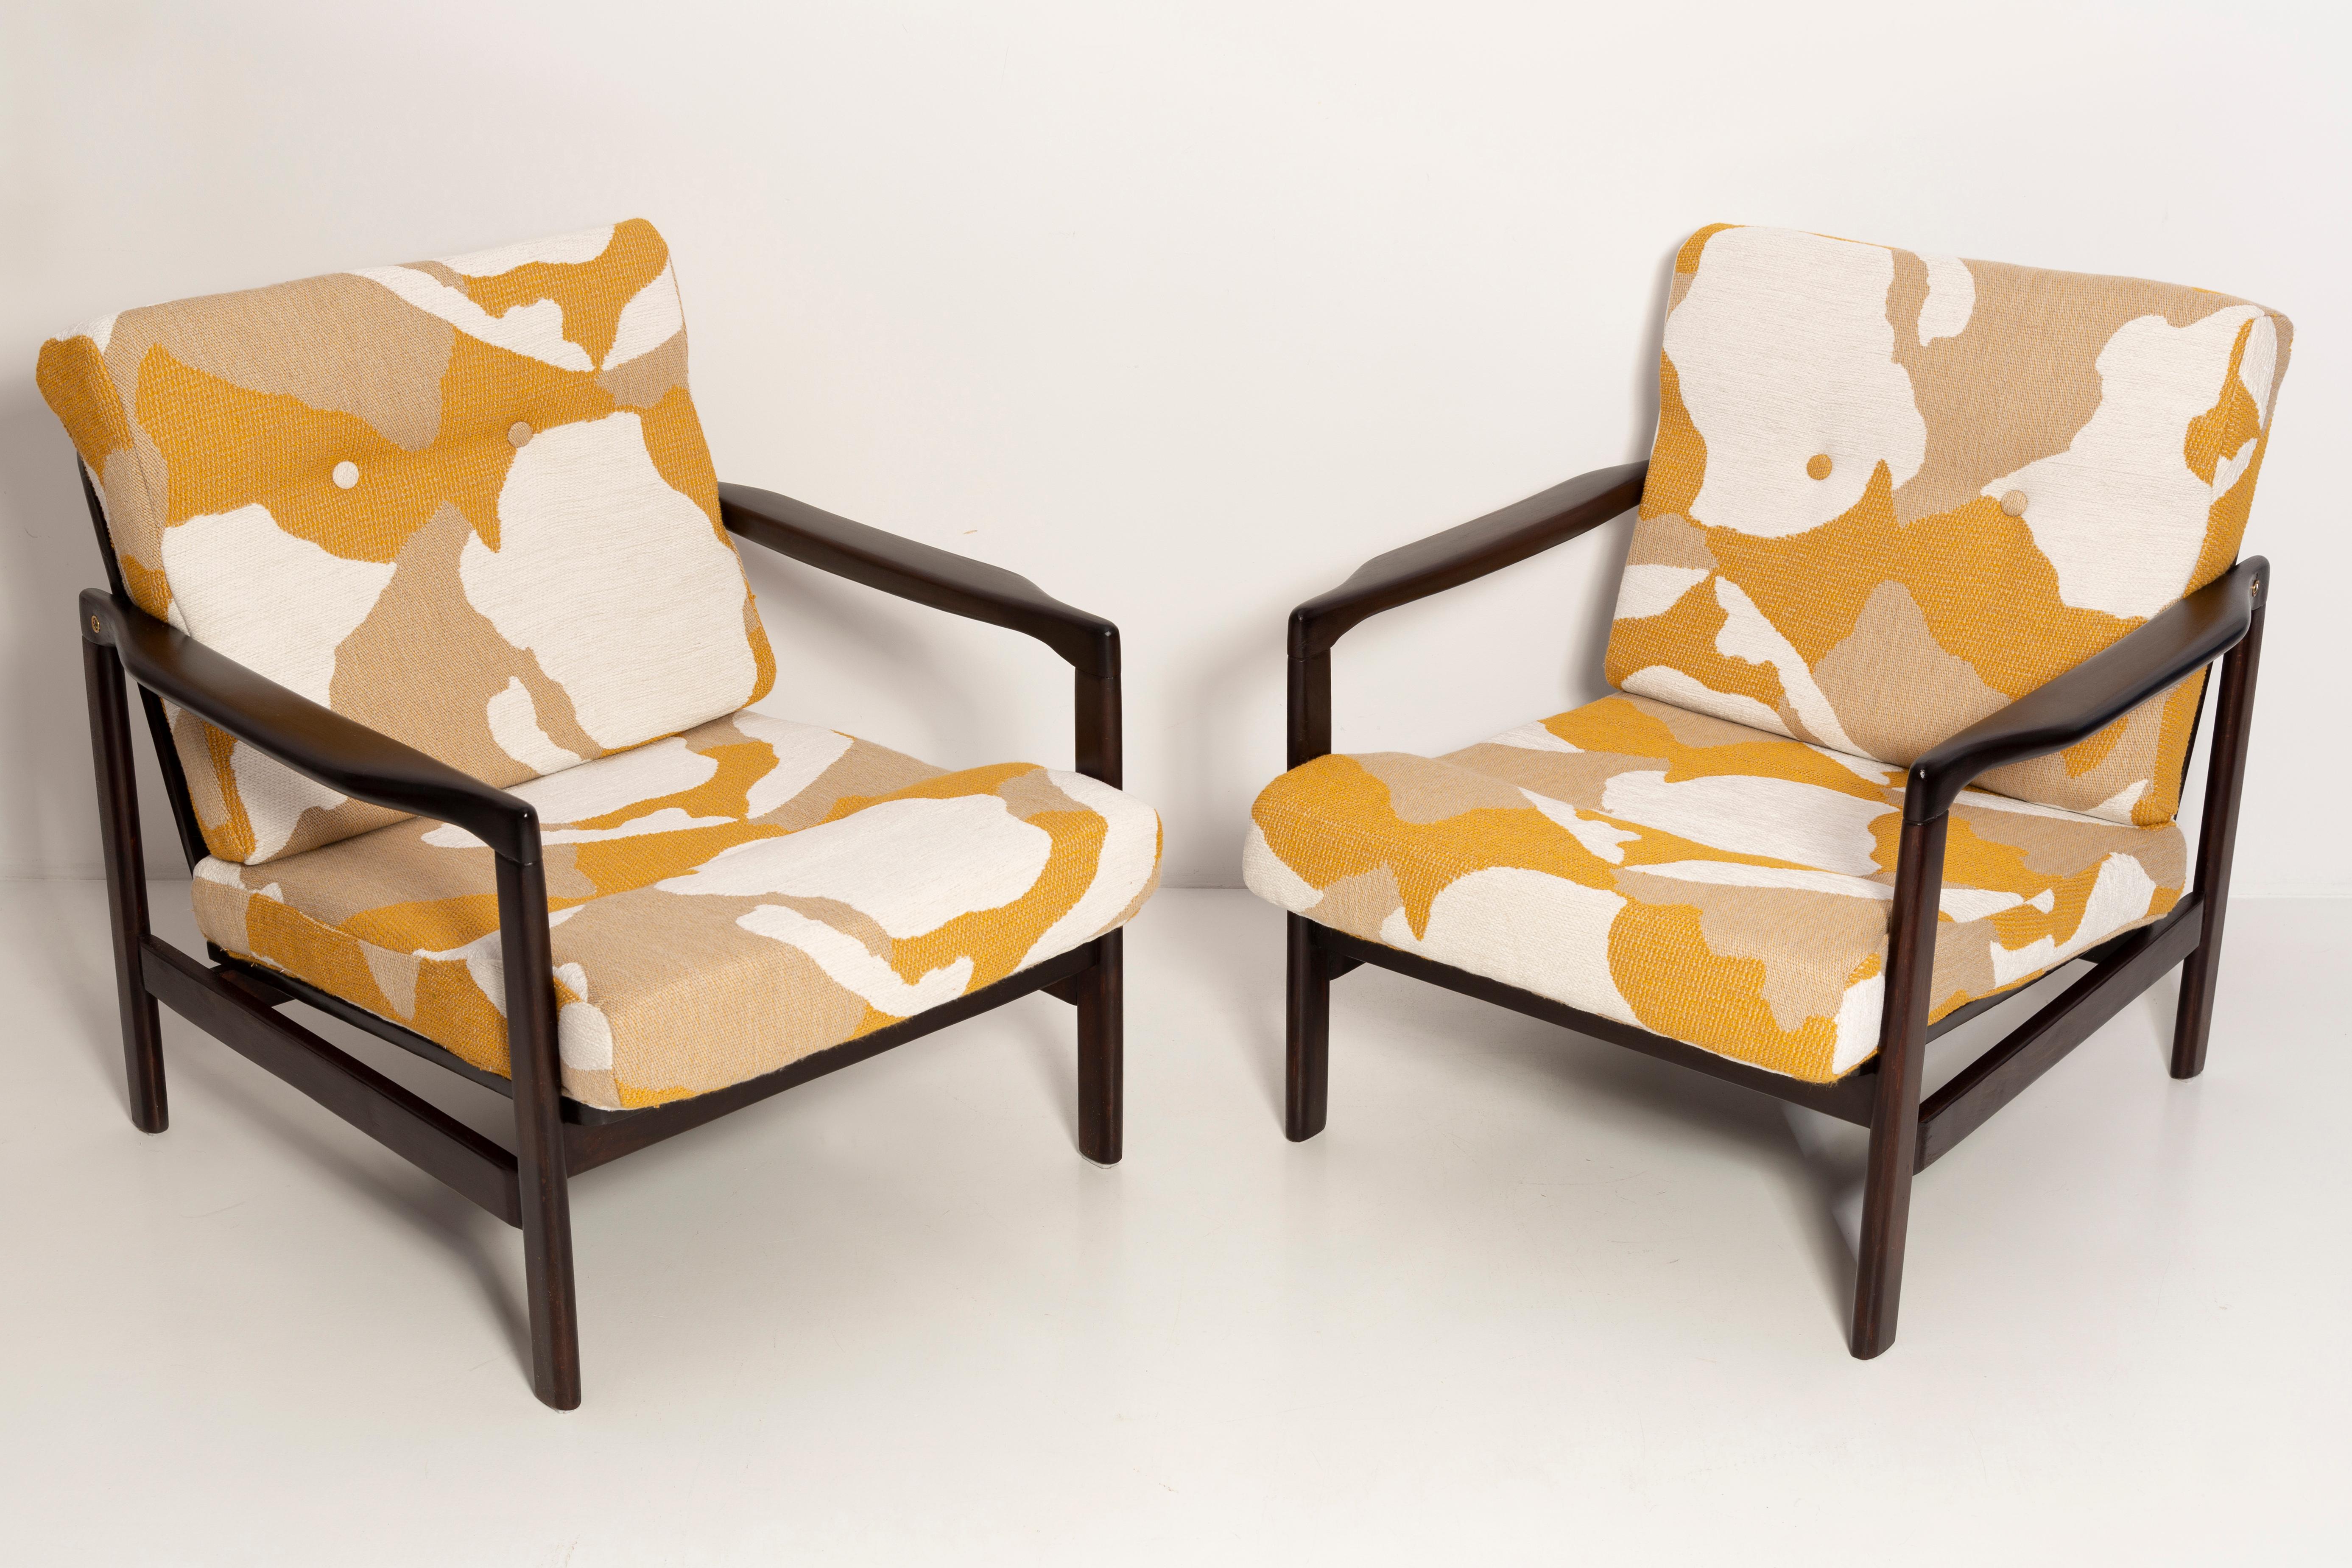 Der Sessel B-7522 wurde in den 1960er Jahren von Zenon Baczyk entworfen und von den Swarzedz-Möbelfabriken in Polen hergestellt. Dies ist original Vintage-Sessel nach der Renovierung, sie sind nicht neu! 

Die Möbel sind in perfektem Zustand,